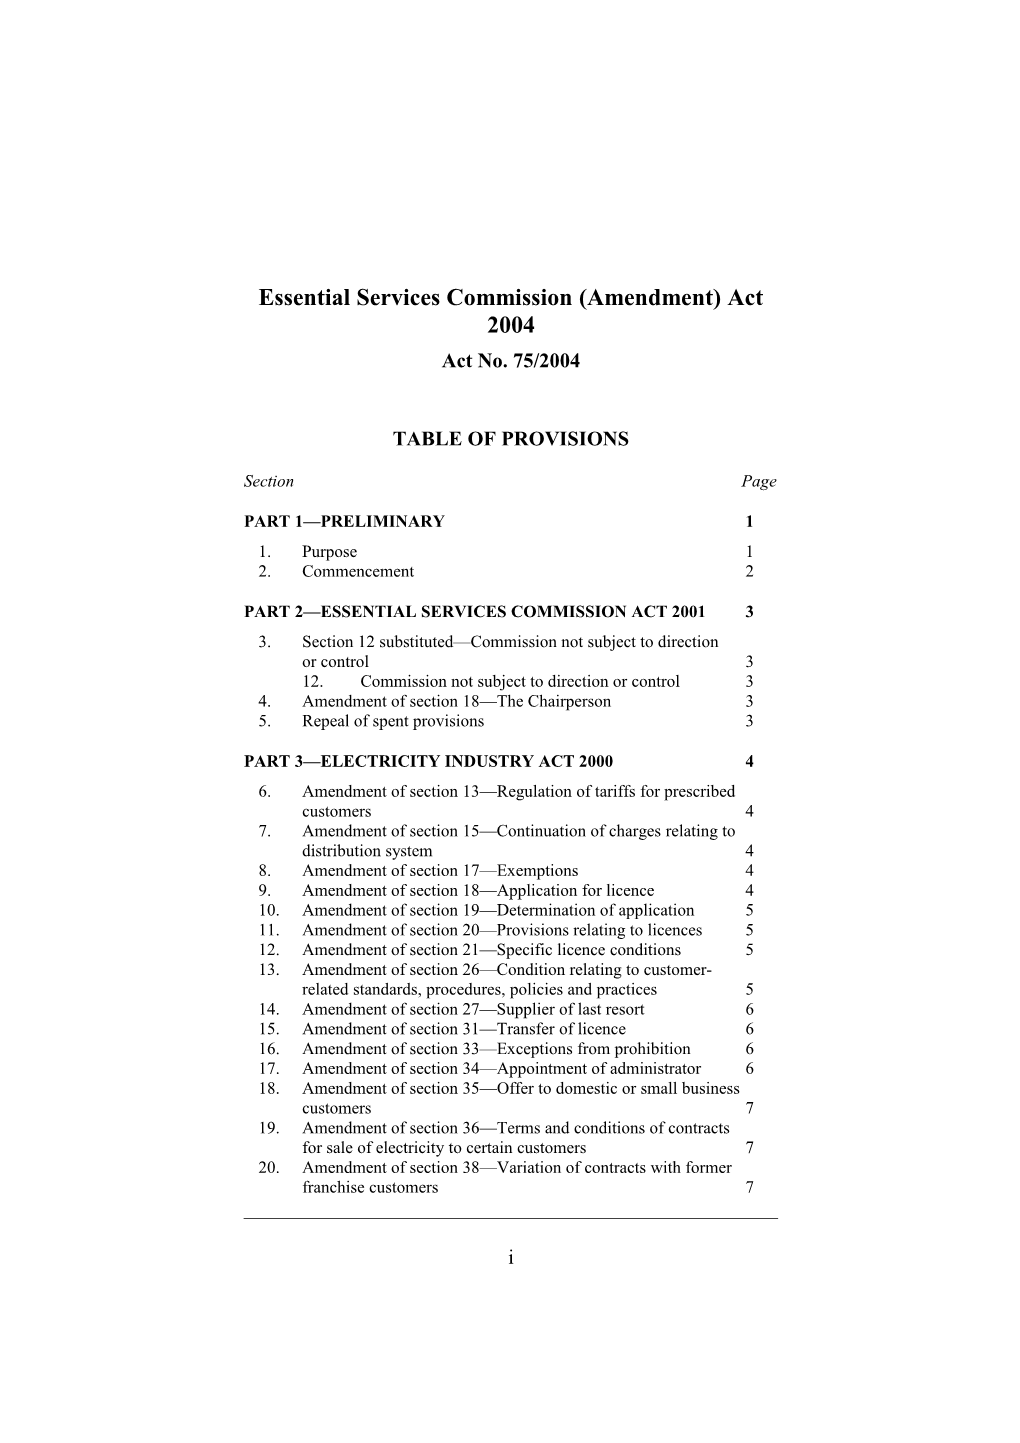 Essential Services Commission (Amendment) Act 2004